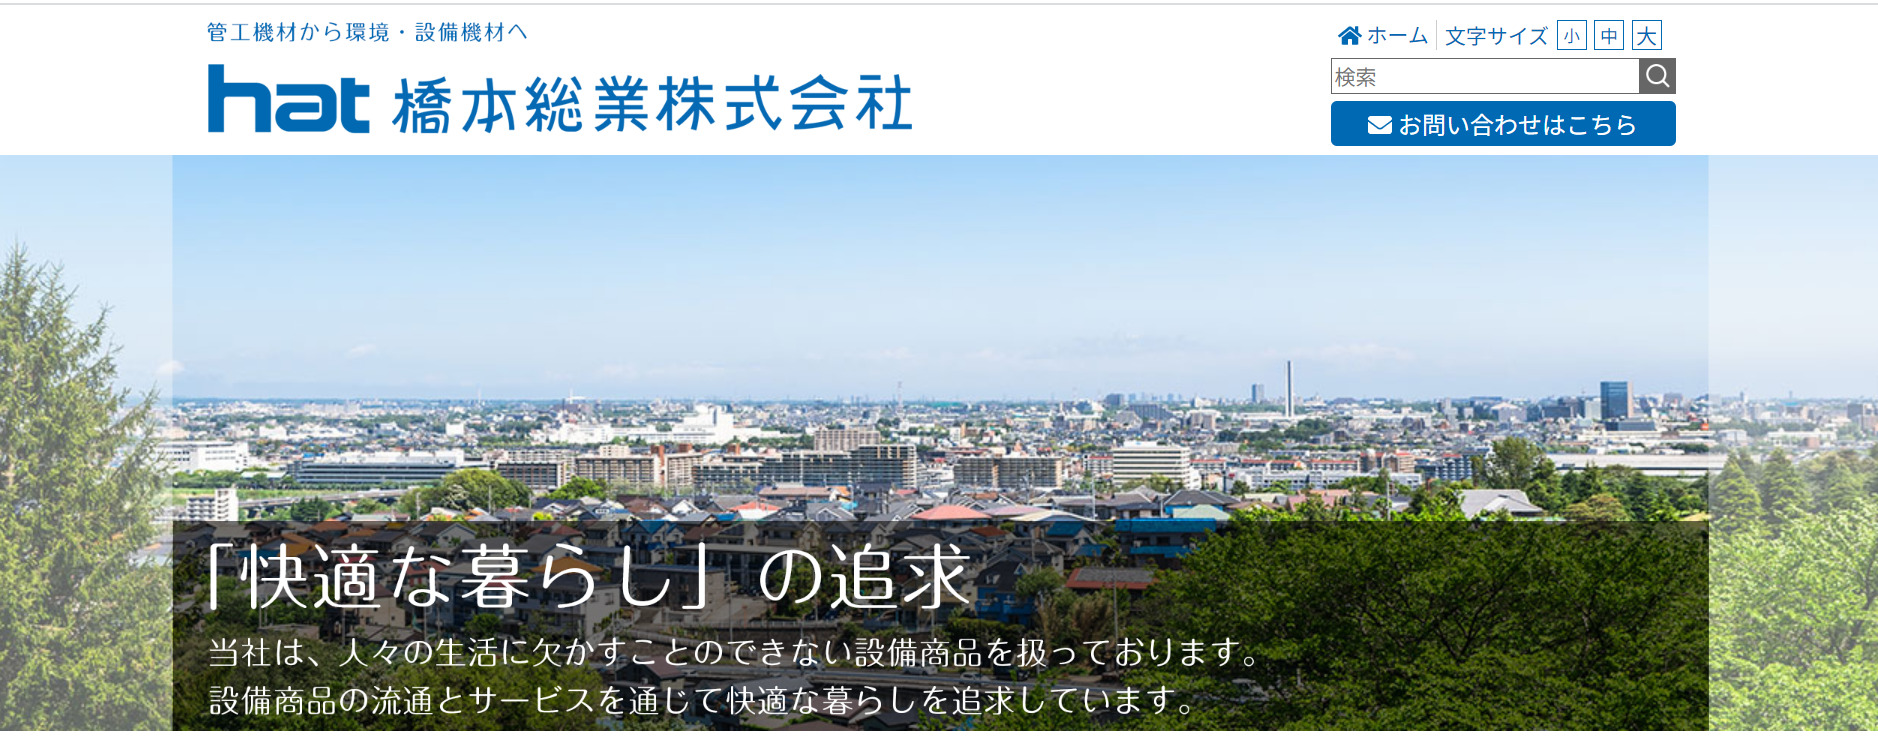 橋本総業株式会社のサイトページ画面